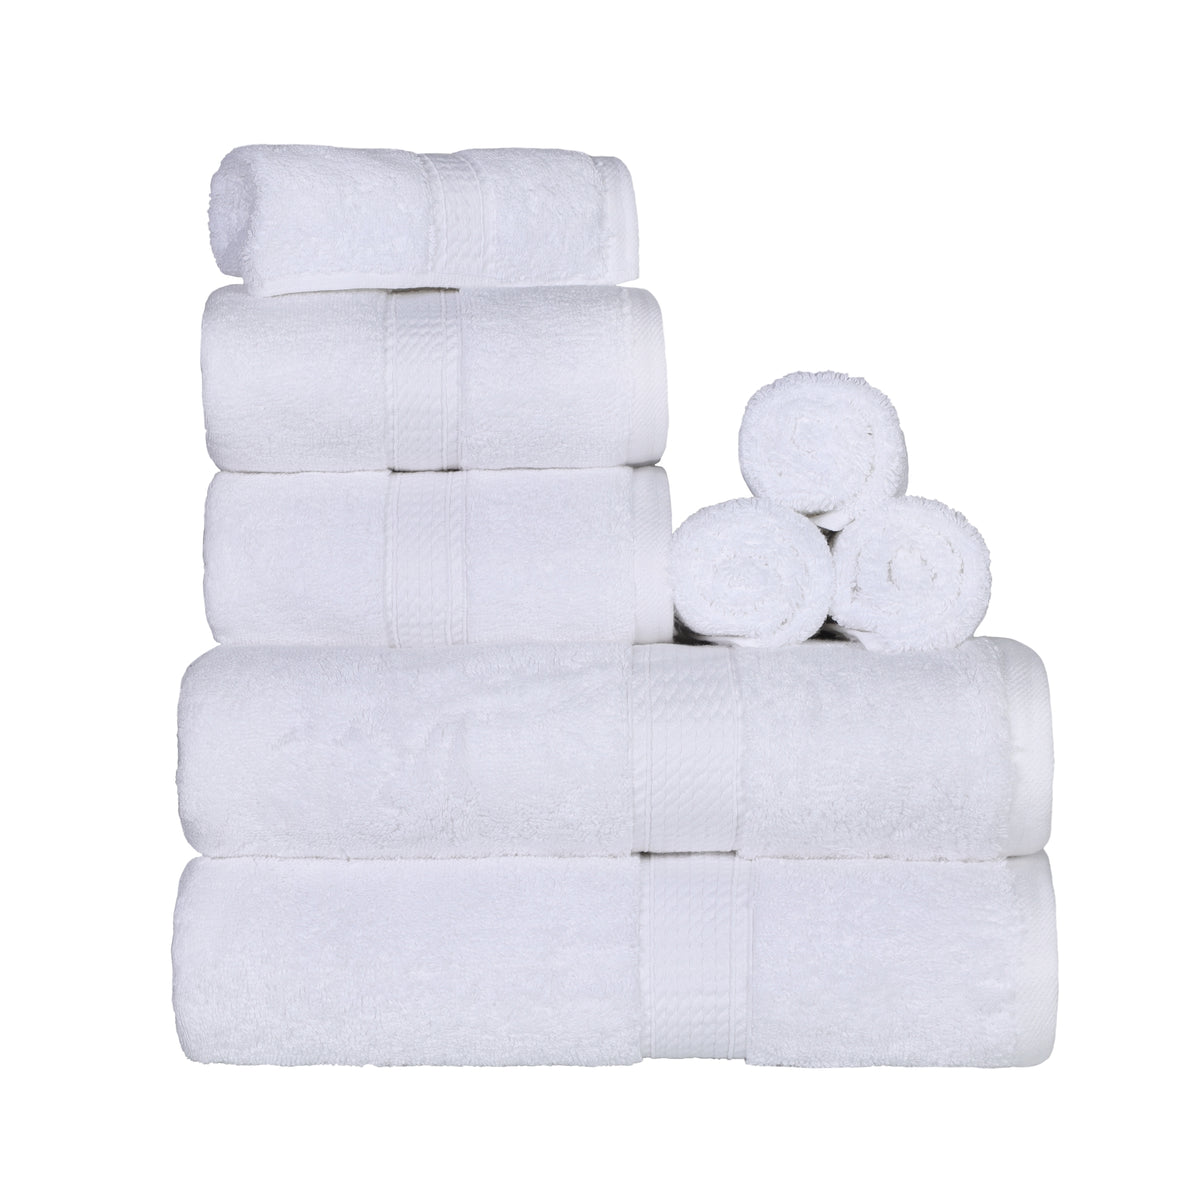 Egyptian Cotton Heavyweight 8 Piece Towel Set - White